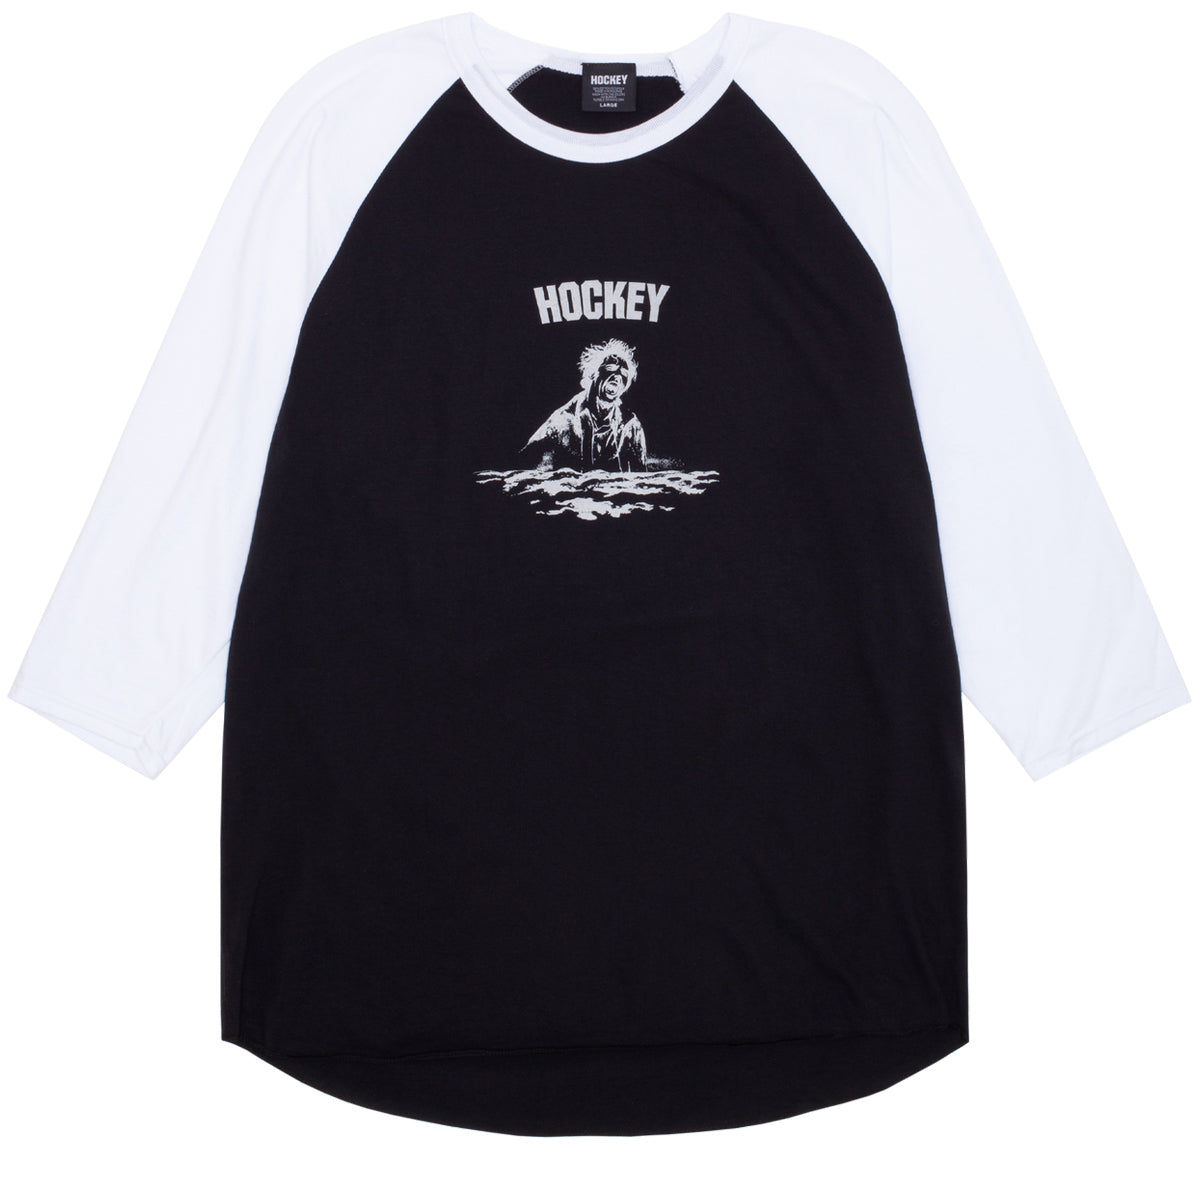 Hockey Surface Baseball T-Shirt - Black/White image 1